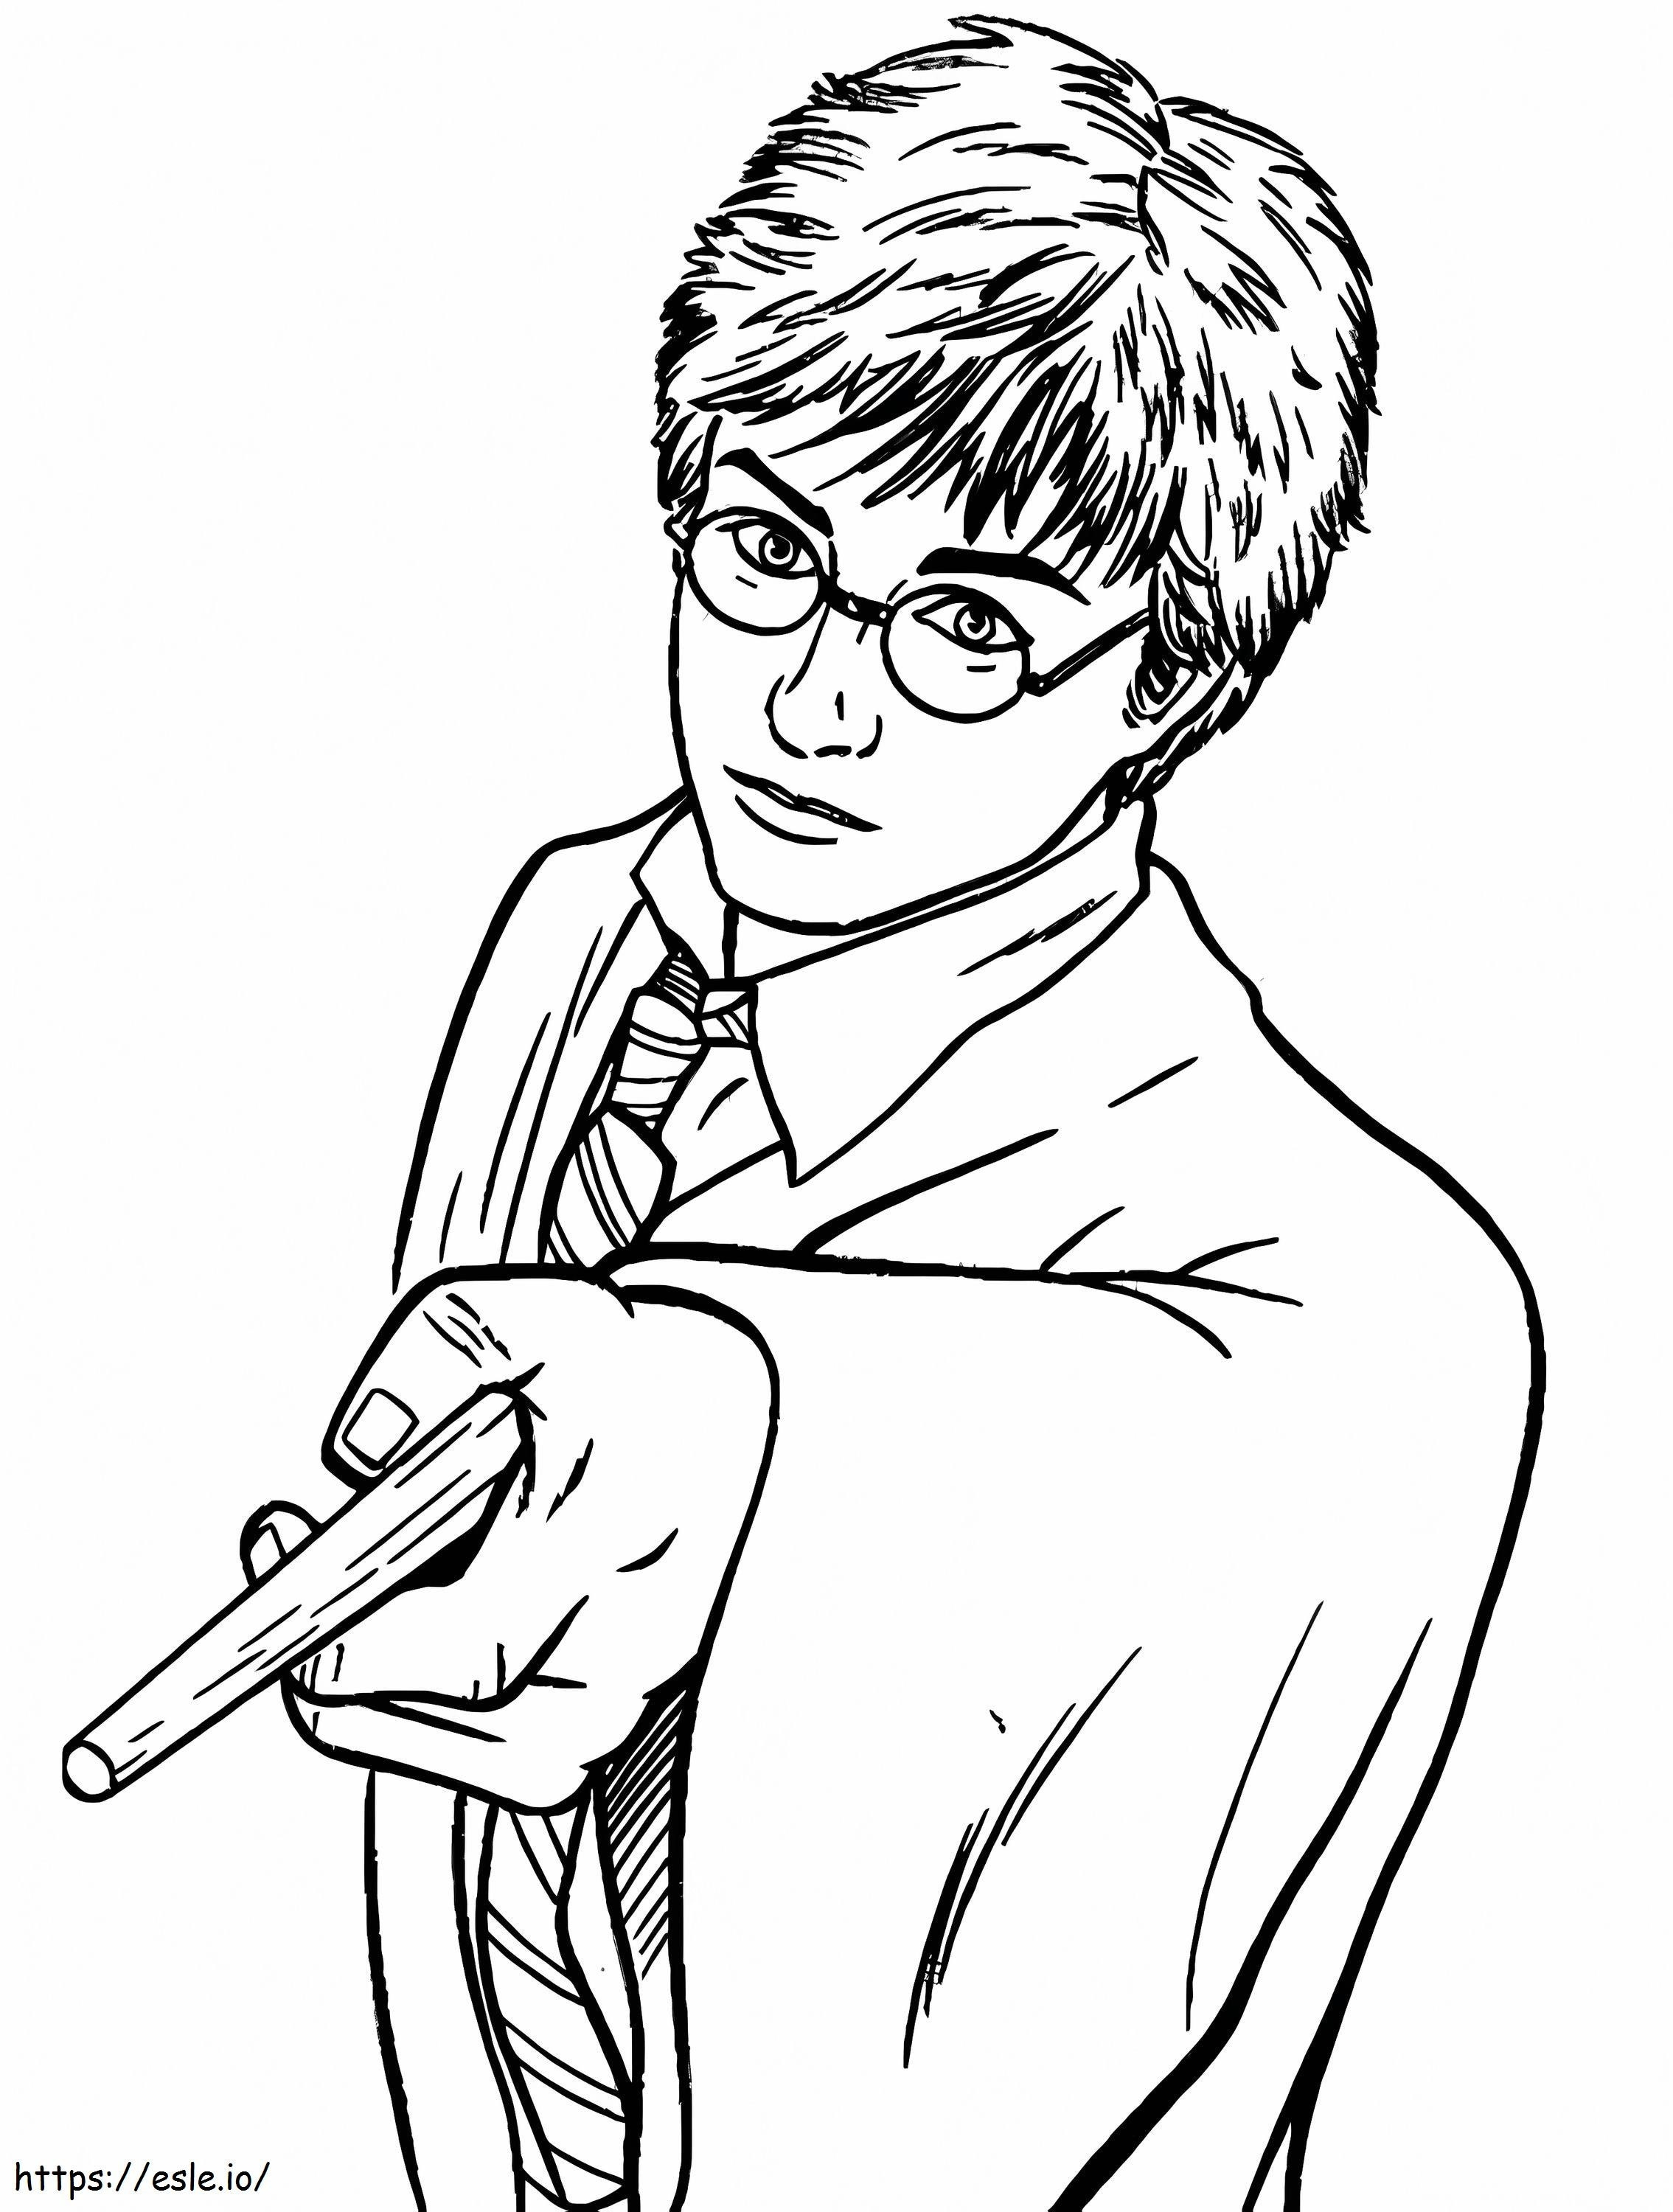 Cool Harry Potter sosteniendo una varita mágica para colorear